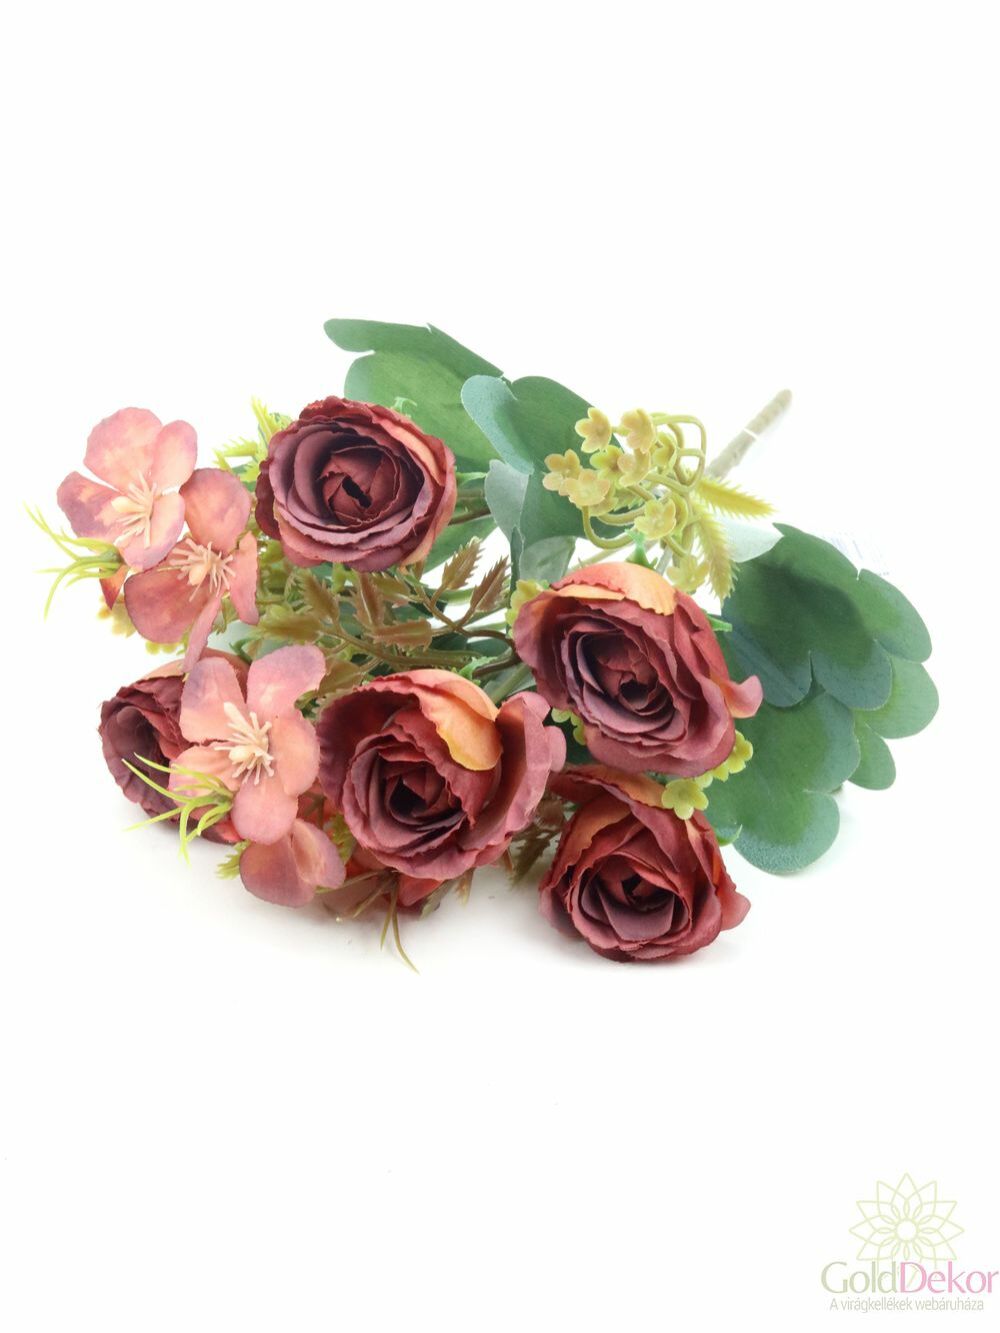 Vegyes színű rózsa csokor - Bordó